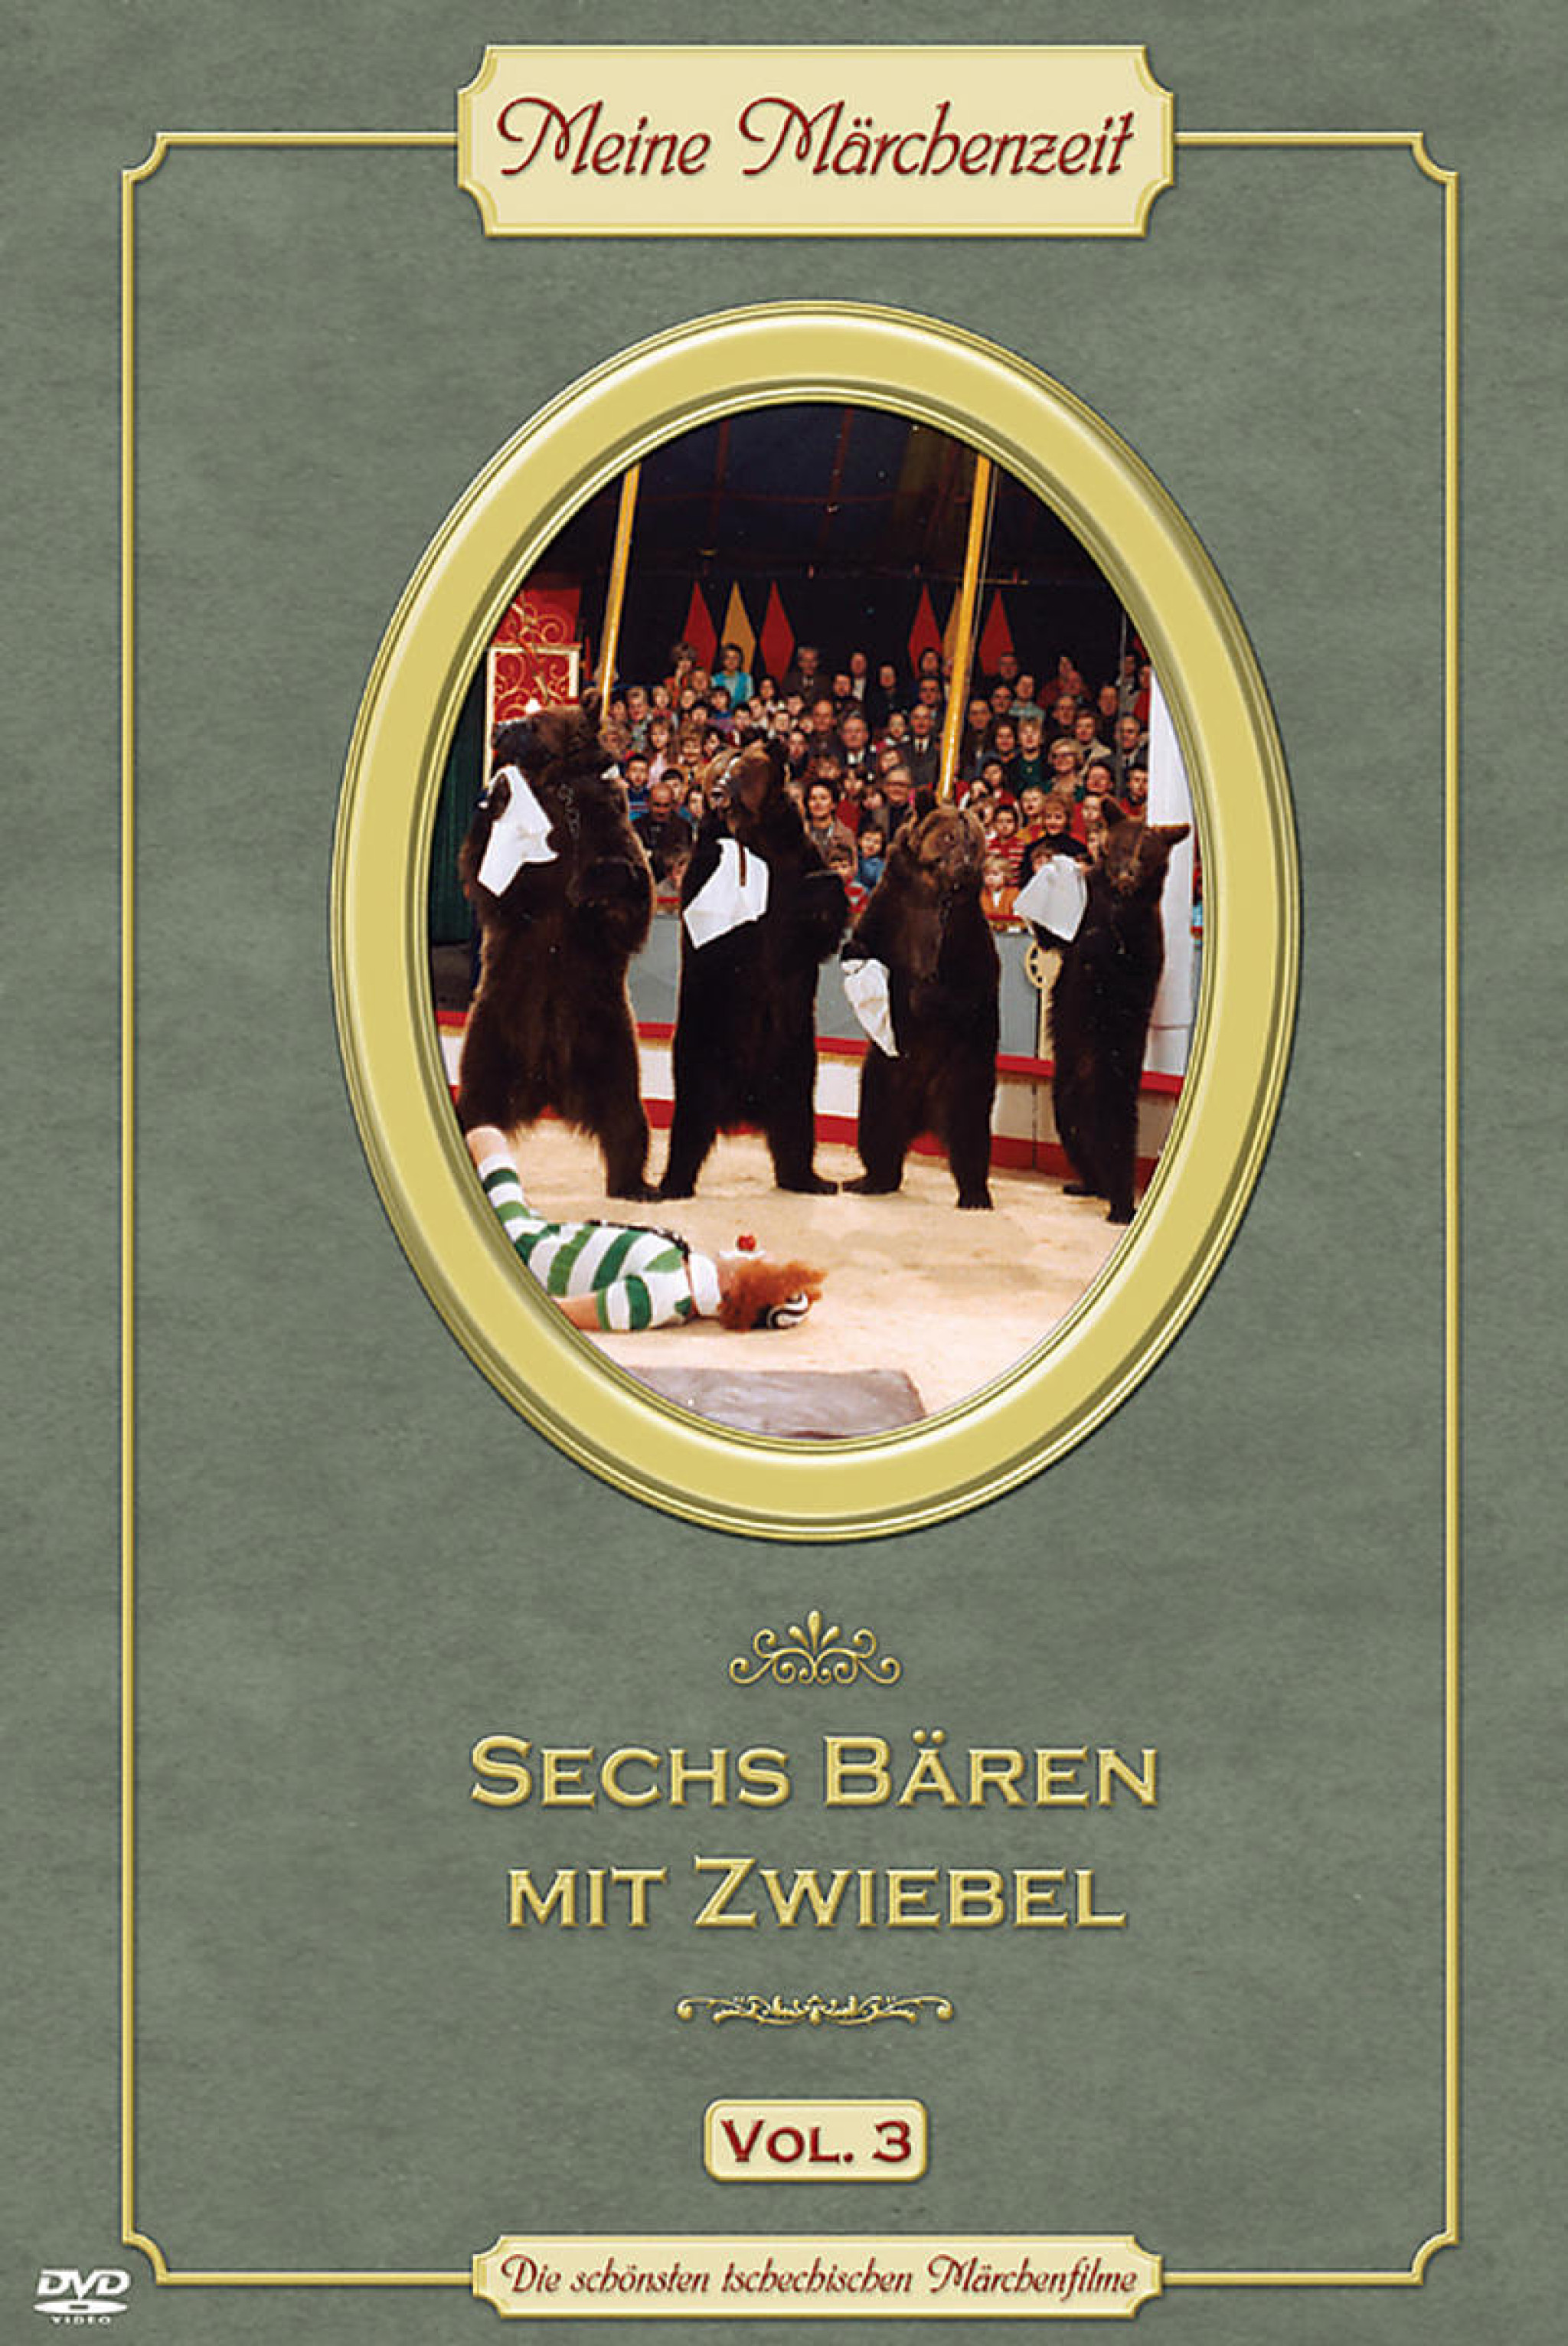 Sechs Bären mit Zwiebel - Meine Märchenwelt (Vol. 3) 0602498186392